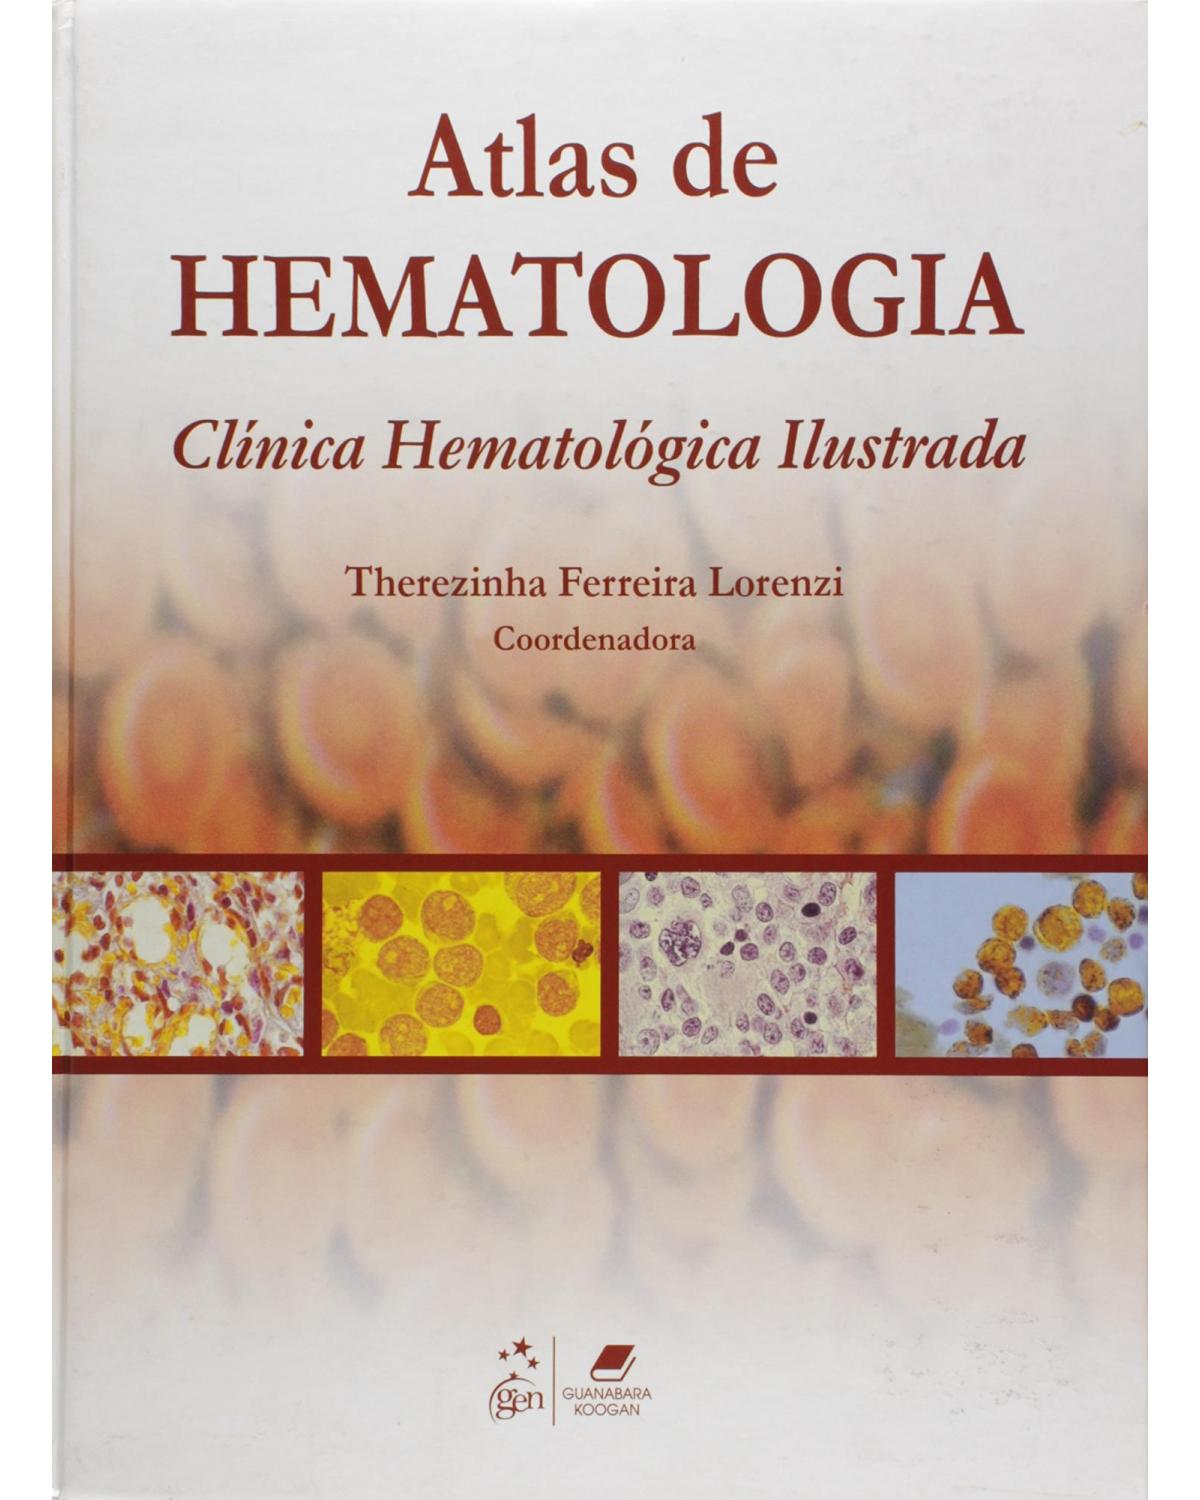 Atlas de hematologia: Clínica hematológica ilustrada - 1ª Edição | 2006